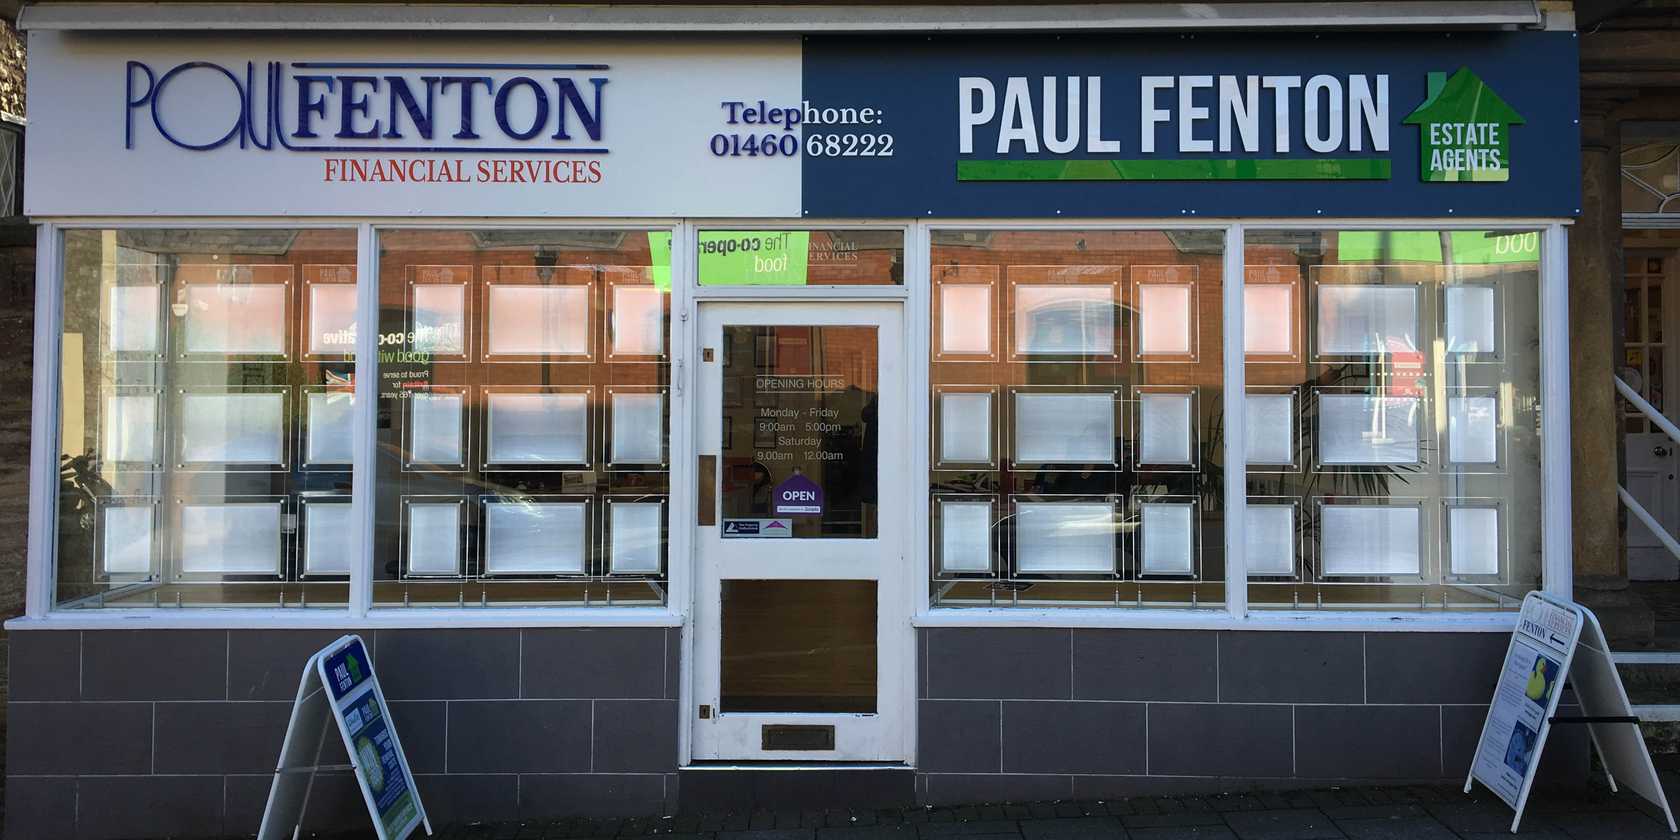 Paul Fenton Estate Agent Signage